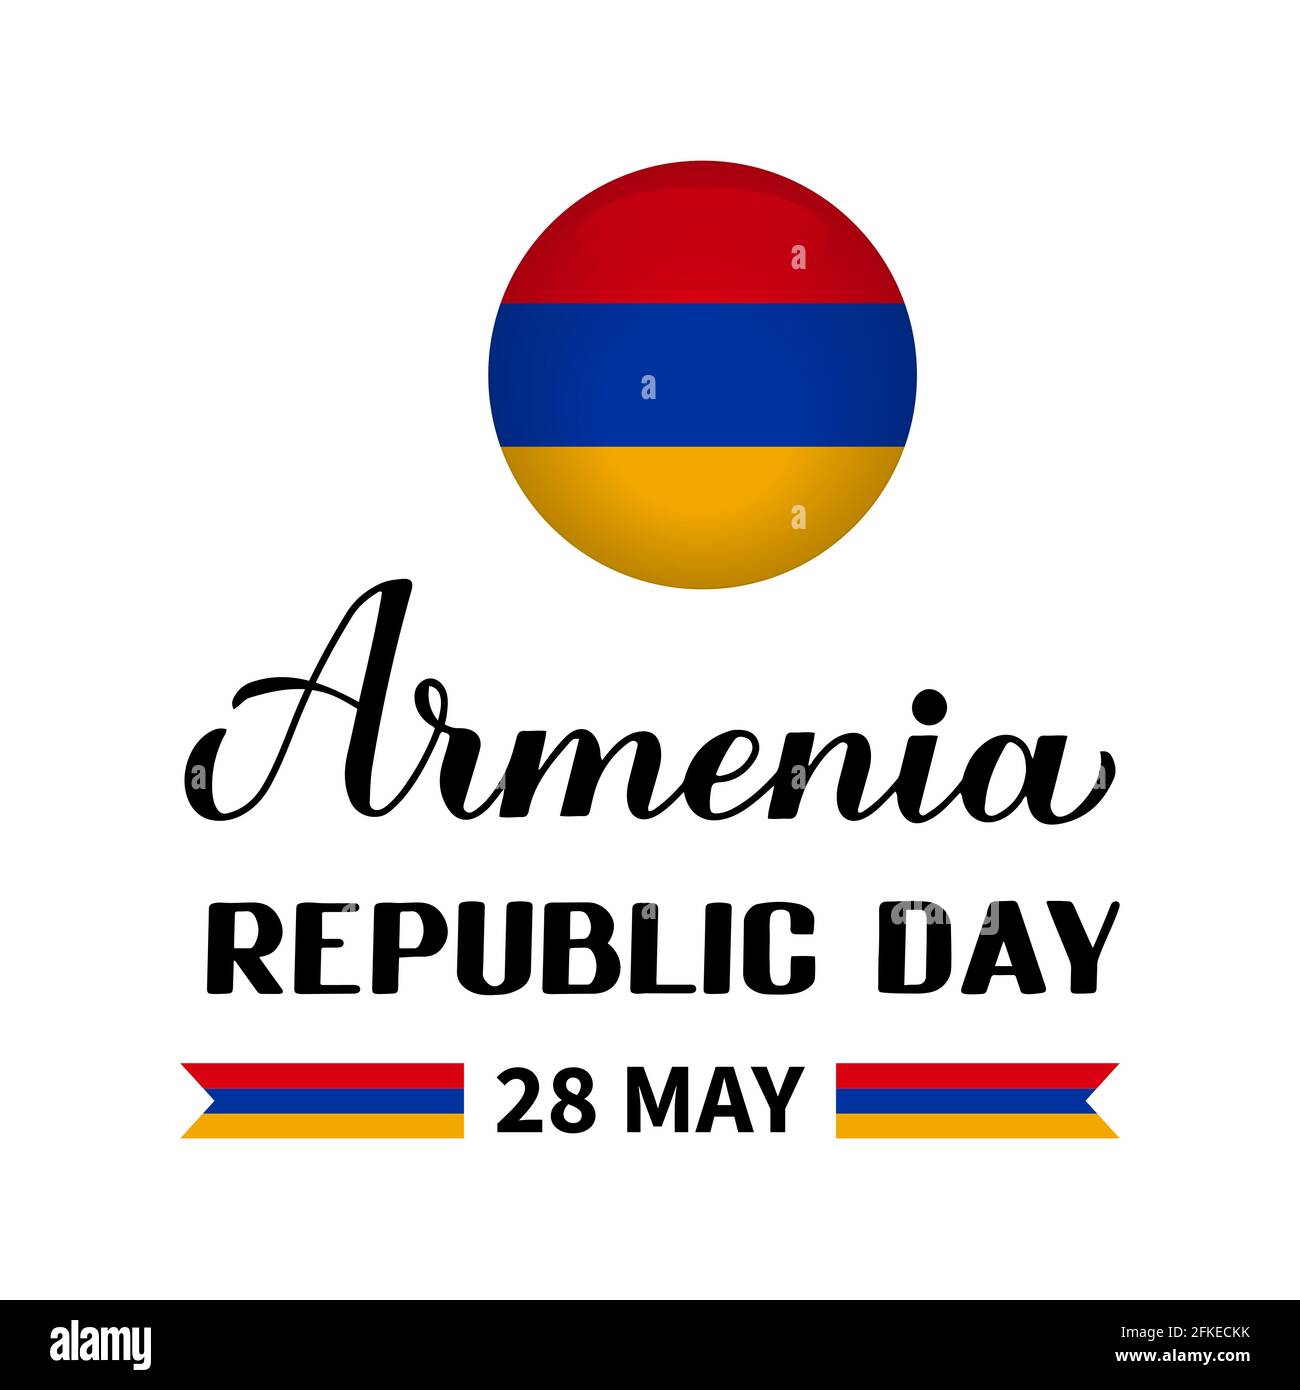 Armenia Republic Day calligrafia scritta a mano con bandiera isolata su bianco. Festa armena celebrata il 18 maggio. Modello vettoriale per pos. Tipografia Illustrazione Vettoriale